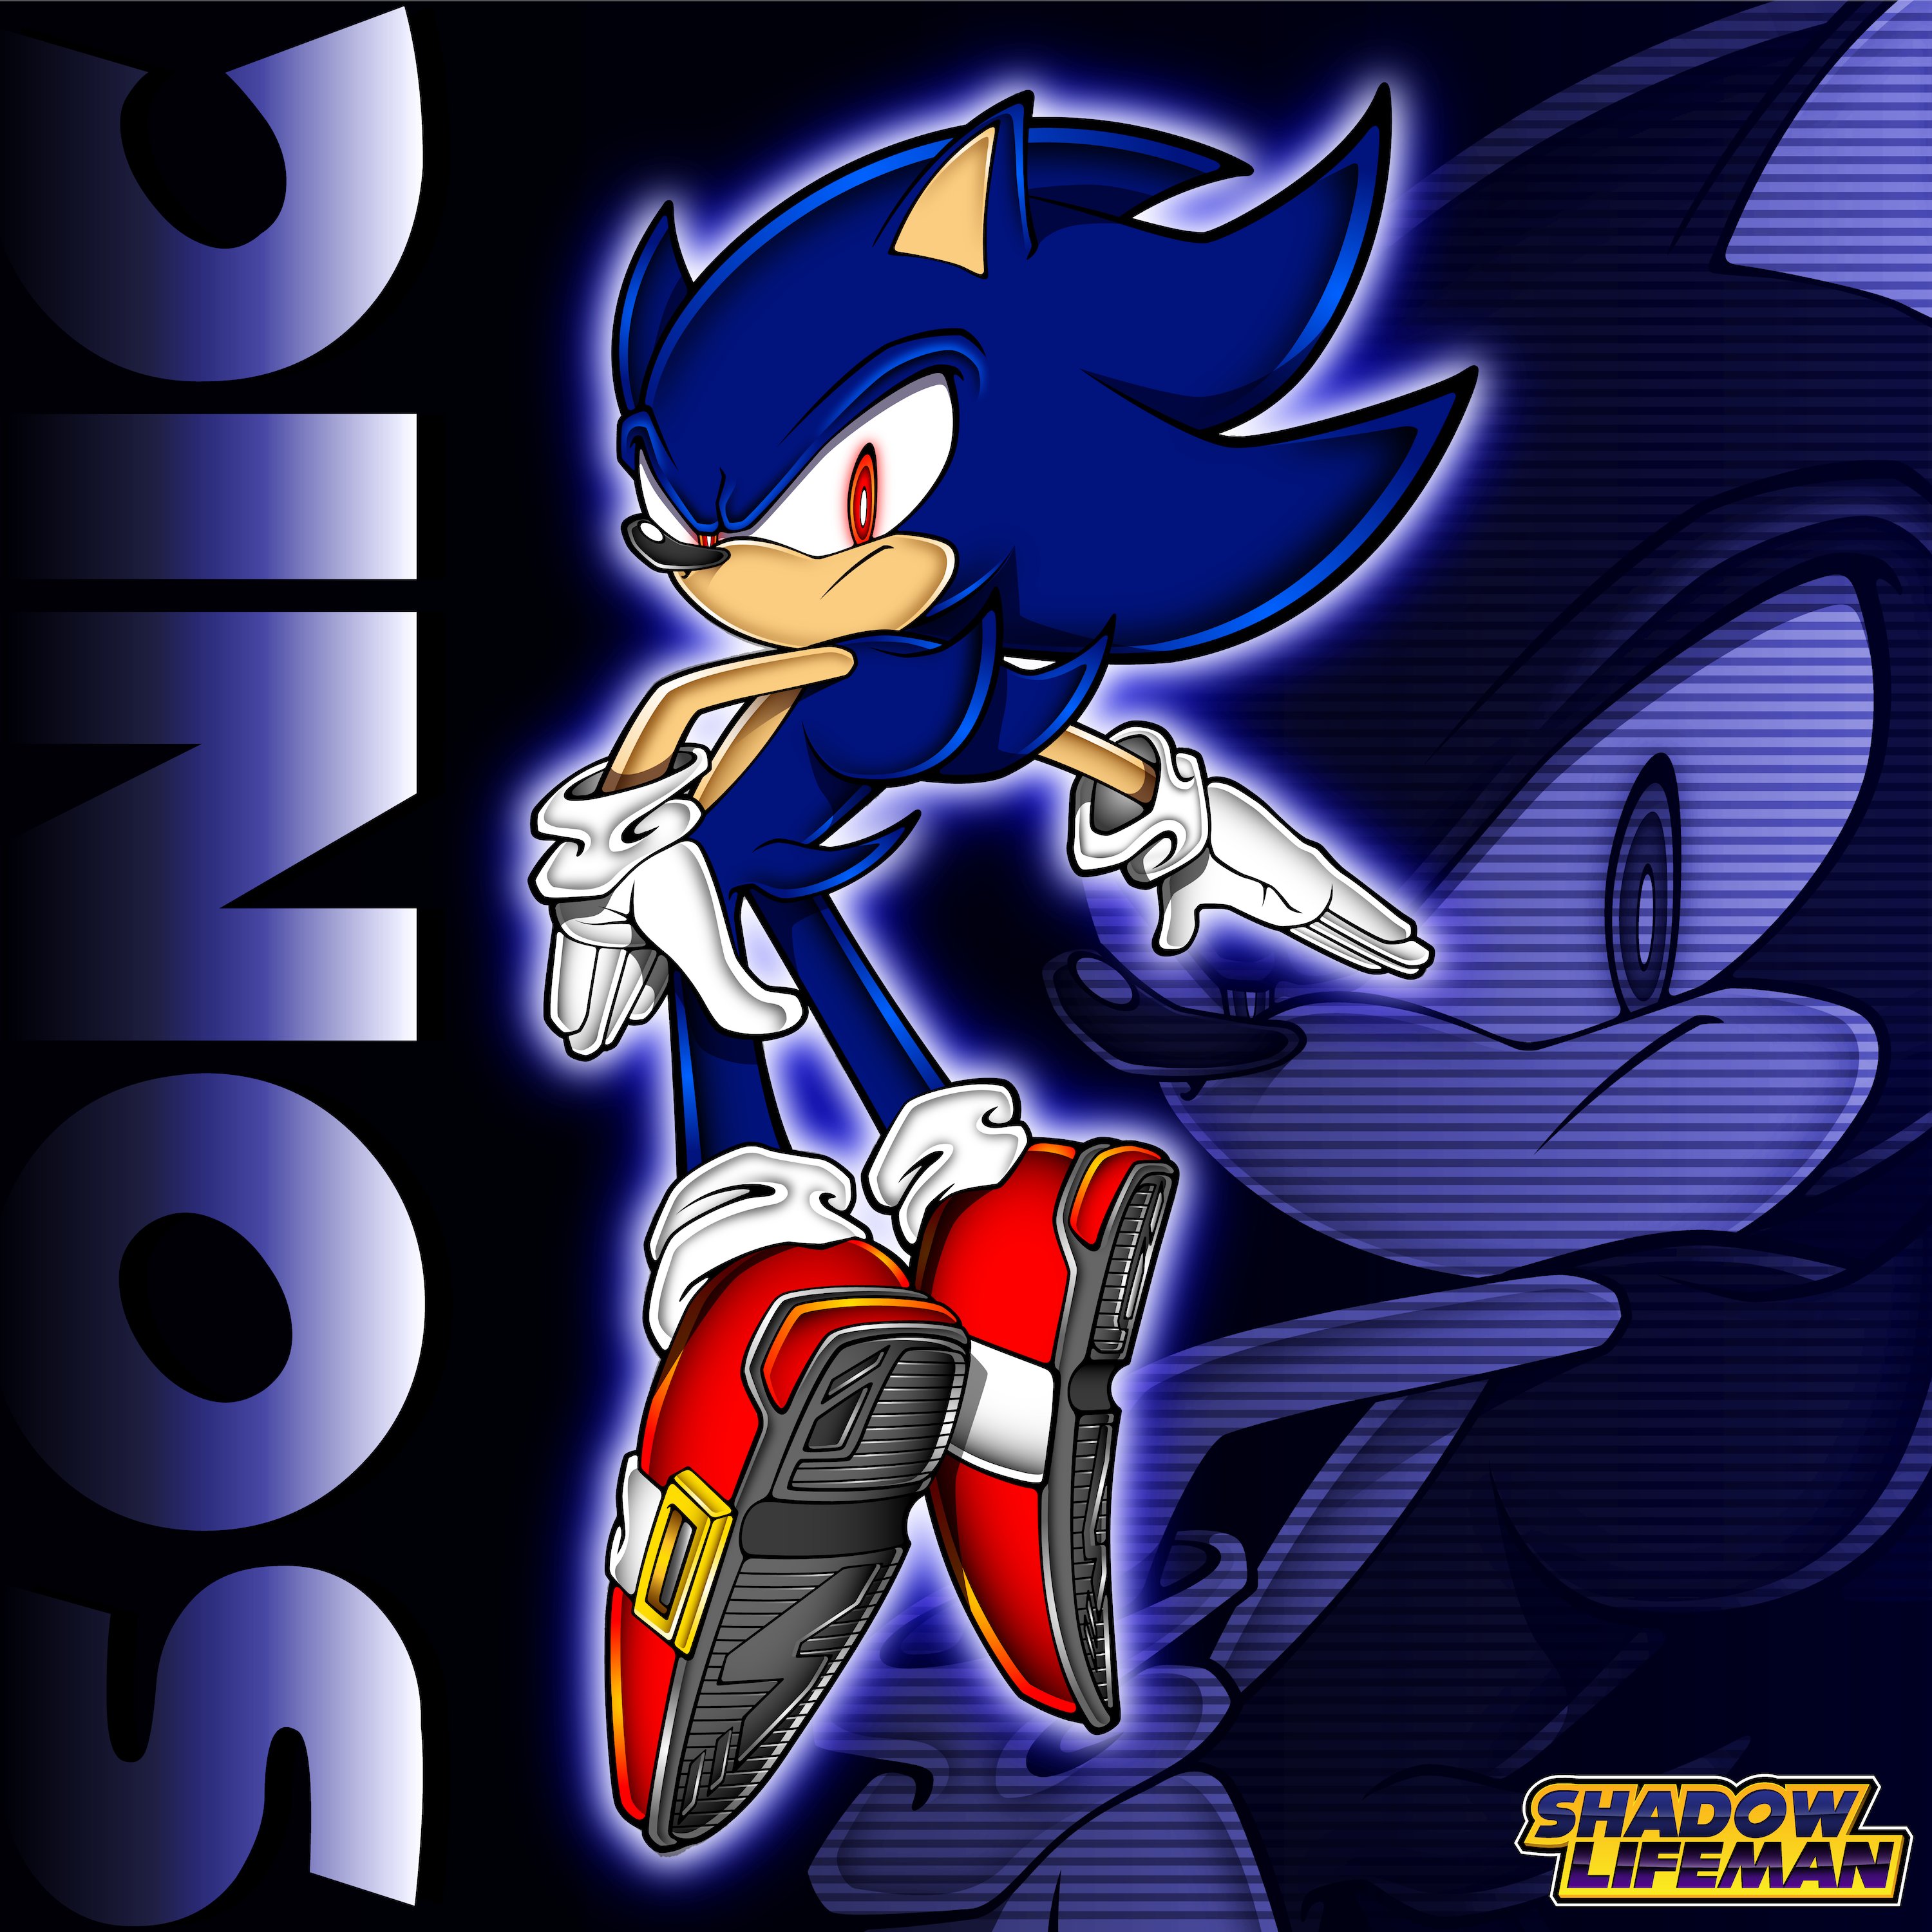 ShadowLifeman on X: Dark Super Sonic (AU) #SonicTheHedeghog #sonicx  #sonicfanart #supersonic #sega #sonicadventure  / X